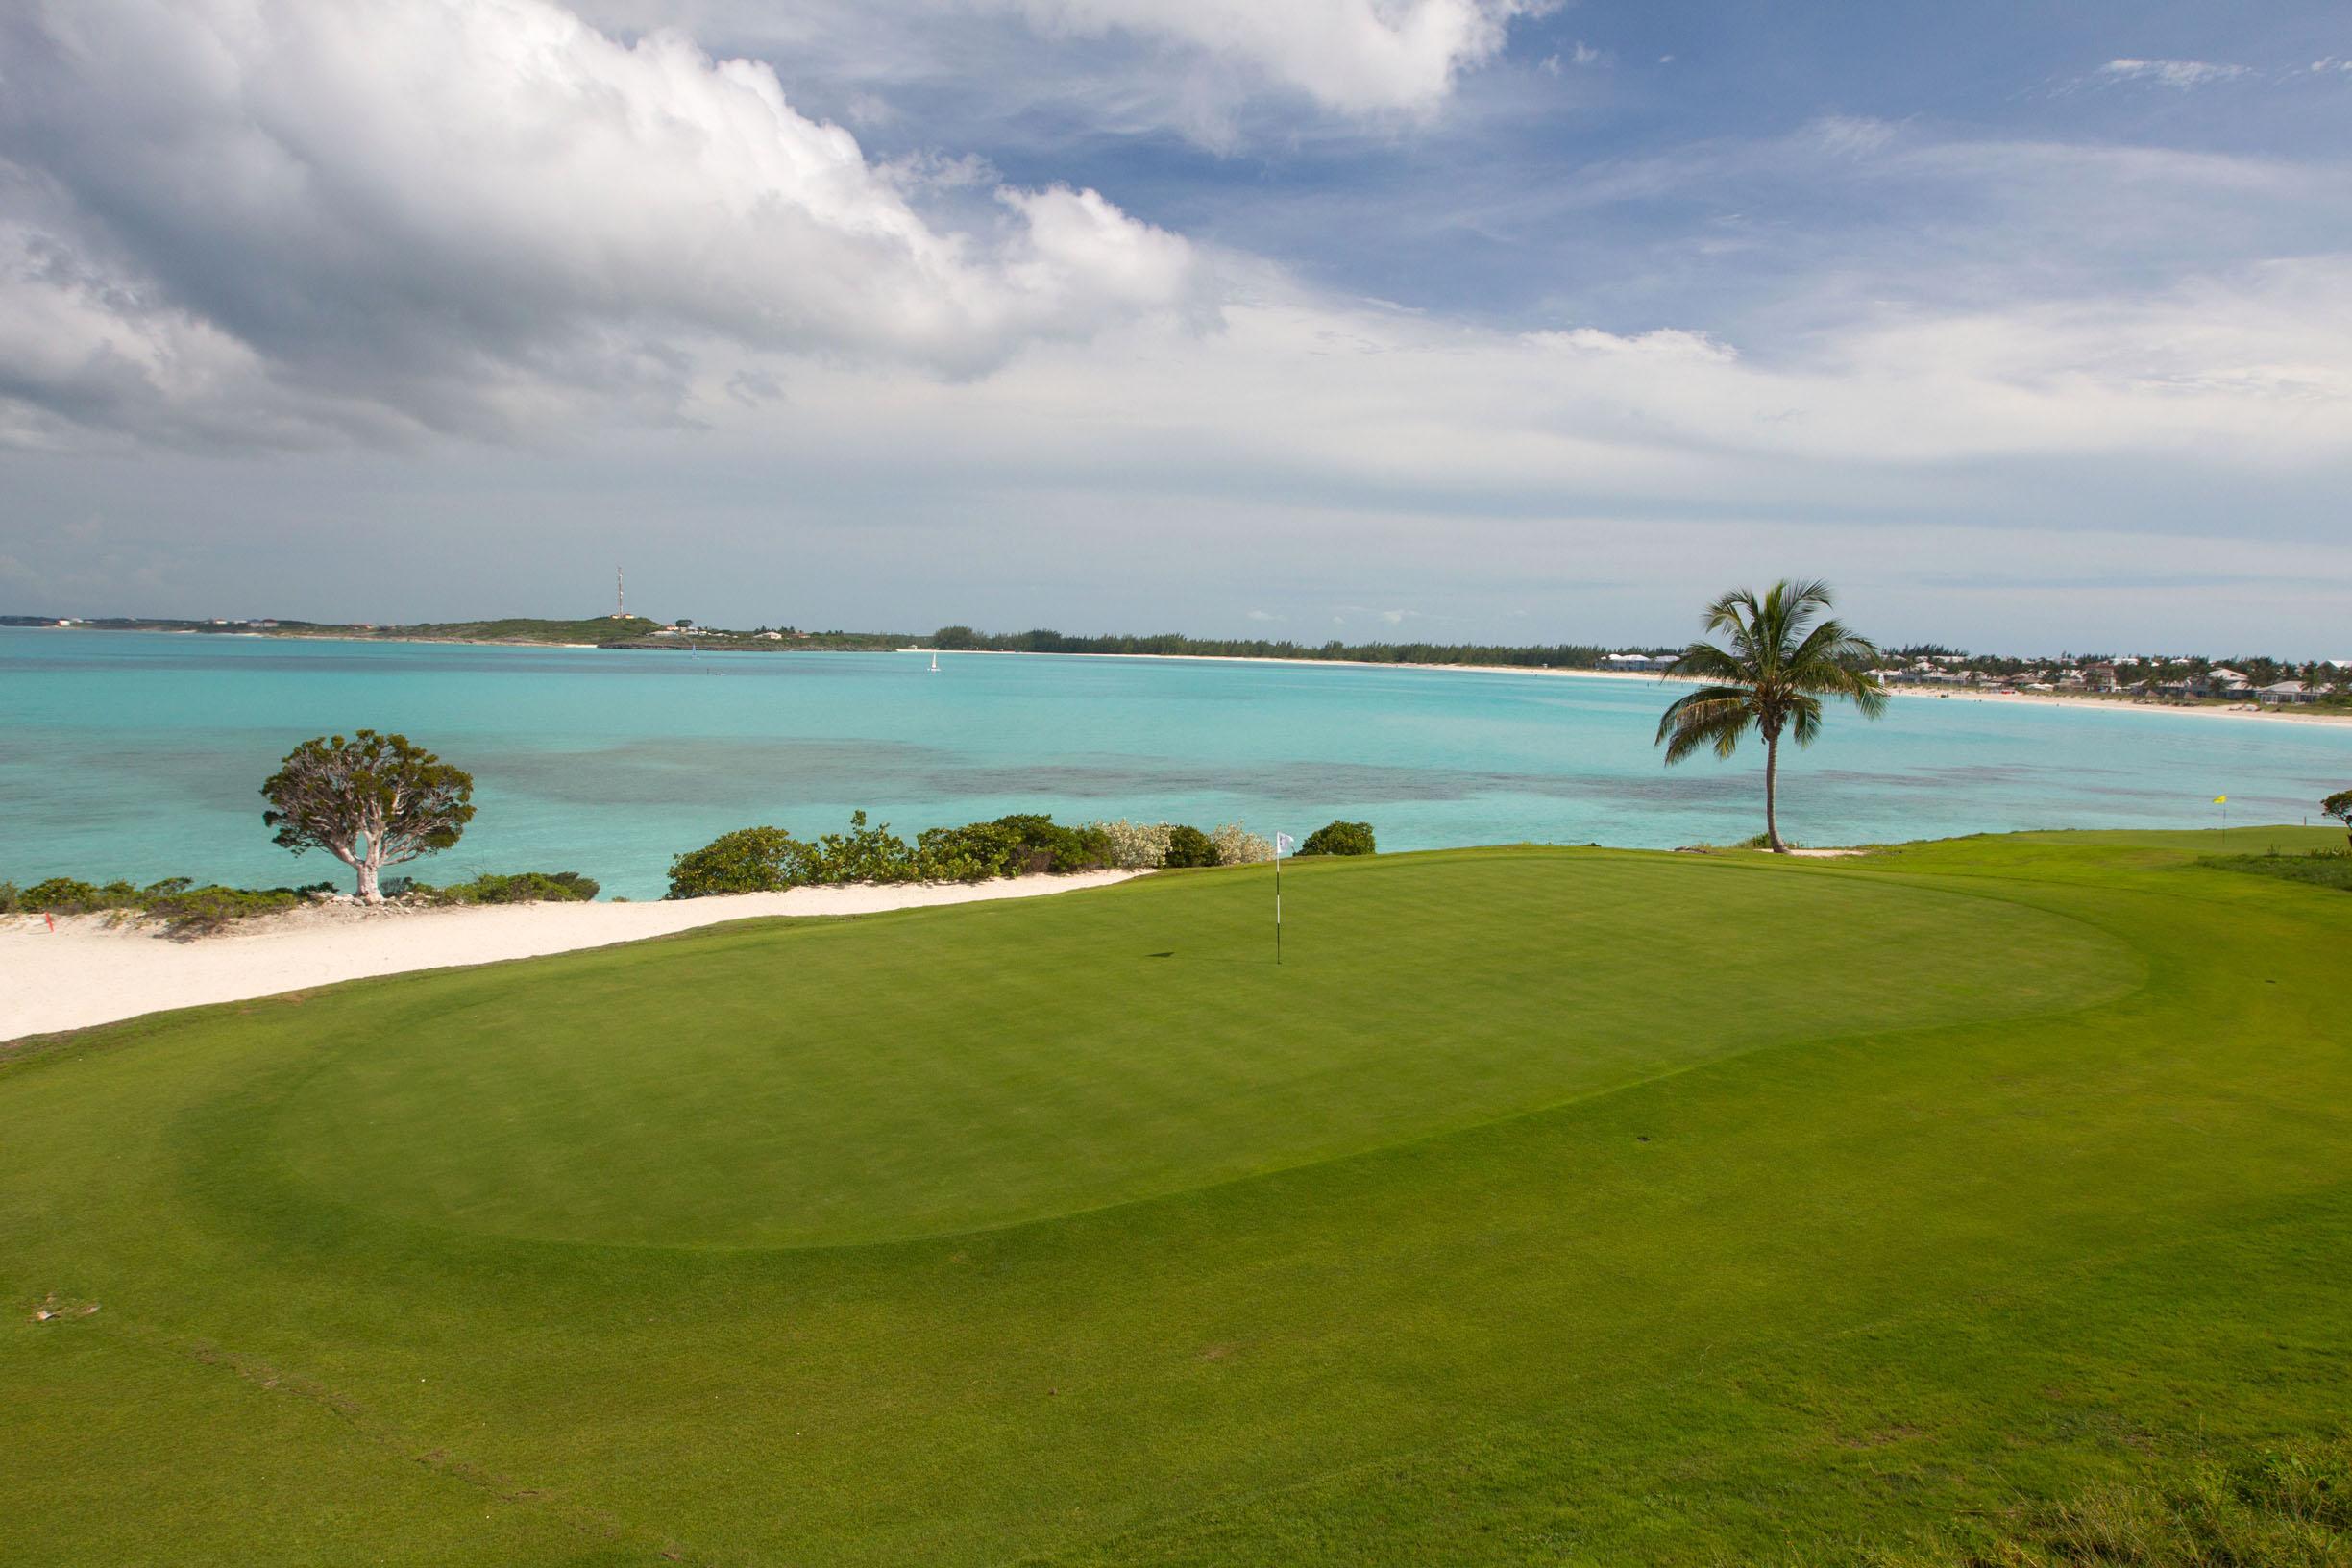 Sandals Emerald Bay Golf Course, The Exumas, The Bahamas